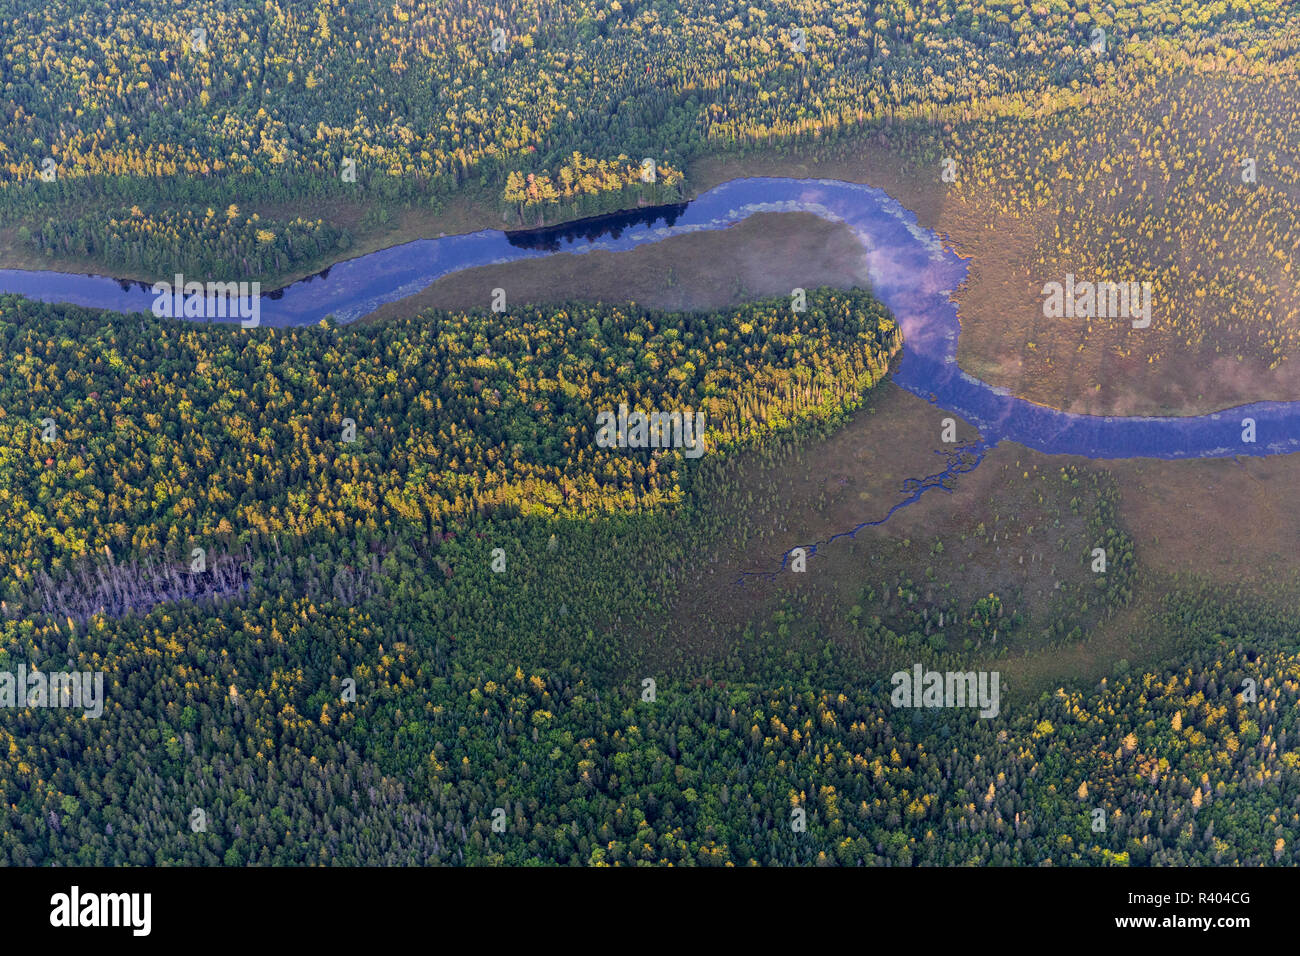 Wytipitlock ruisseau coule à travers marais et forêts près de Wytipitlock Lake à Reed, Maine. Banque D'Images